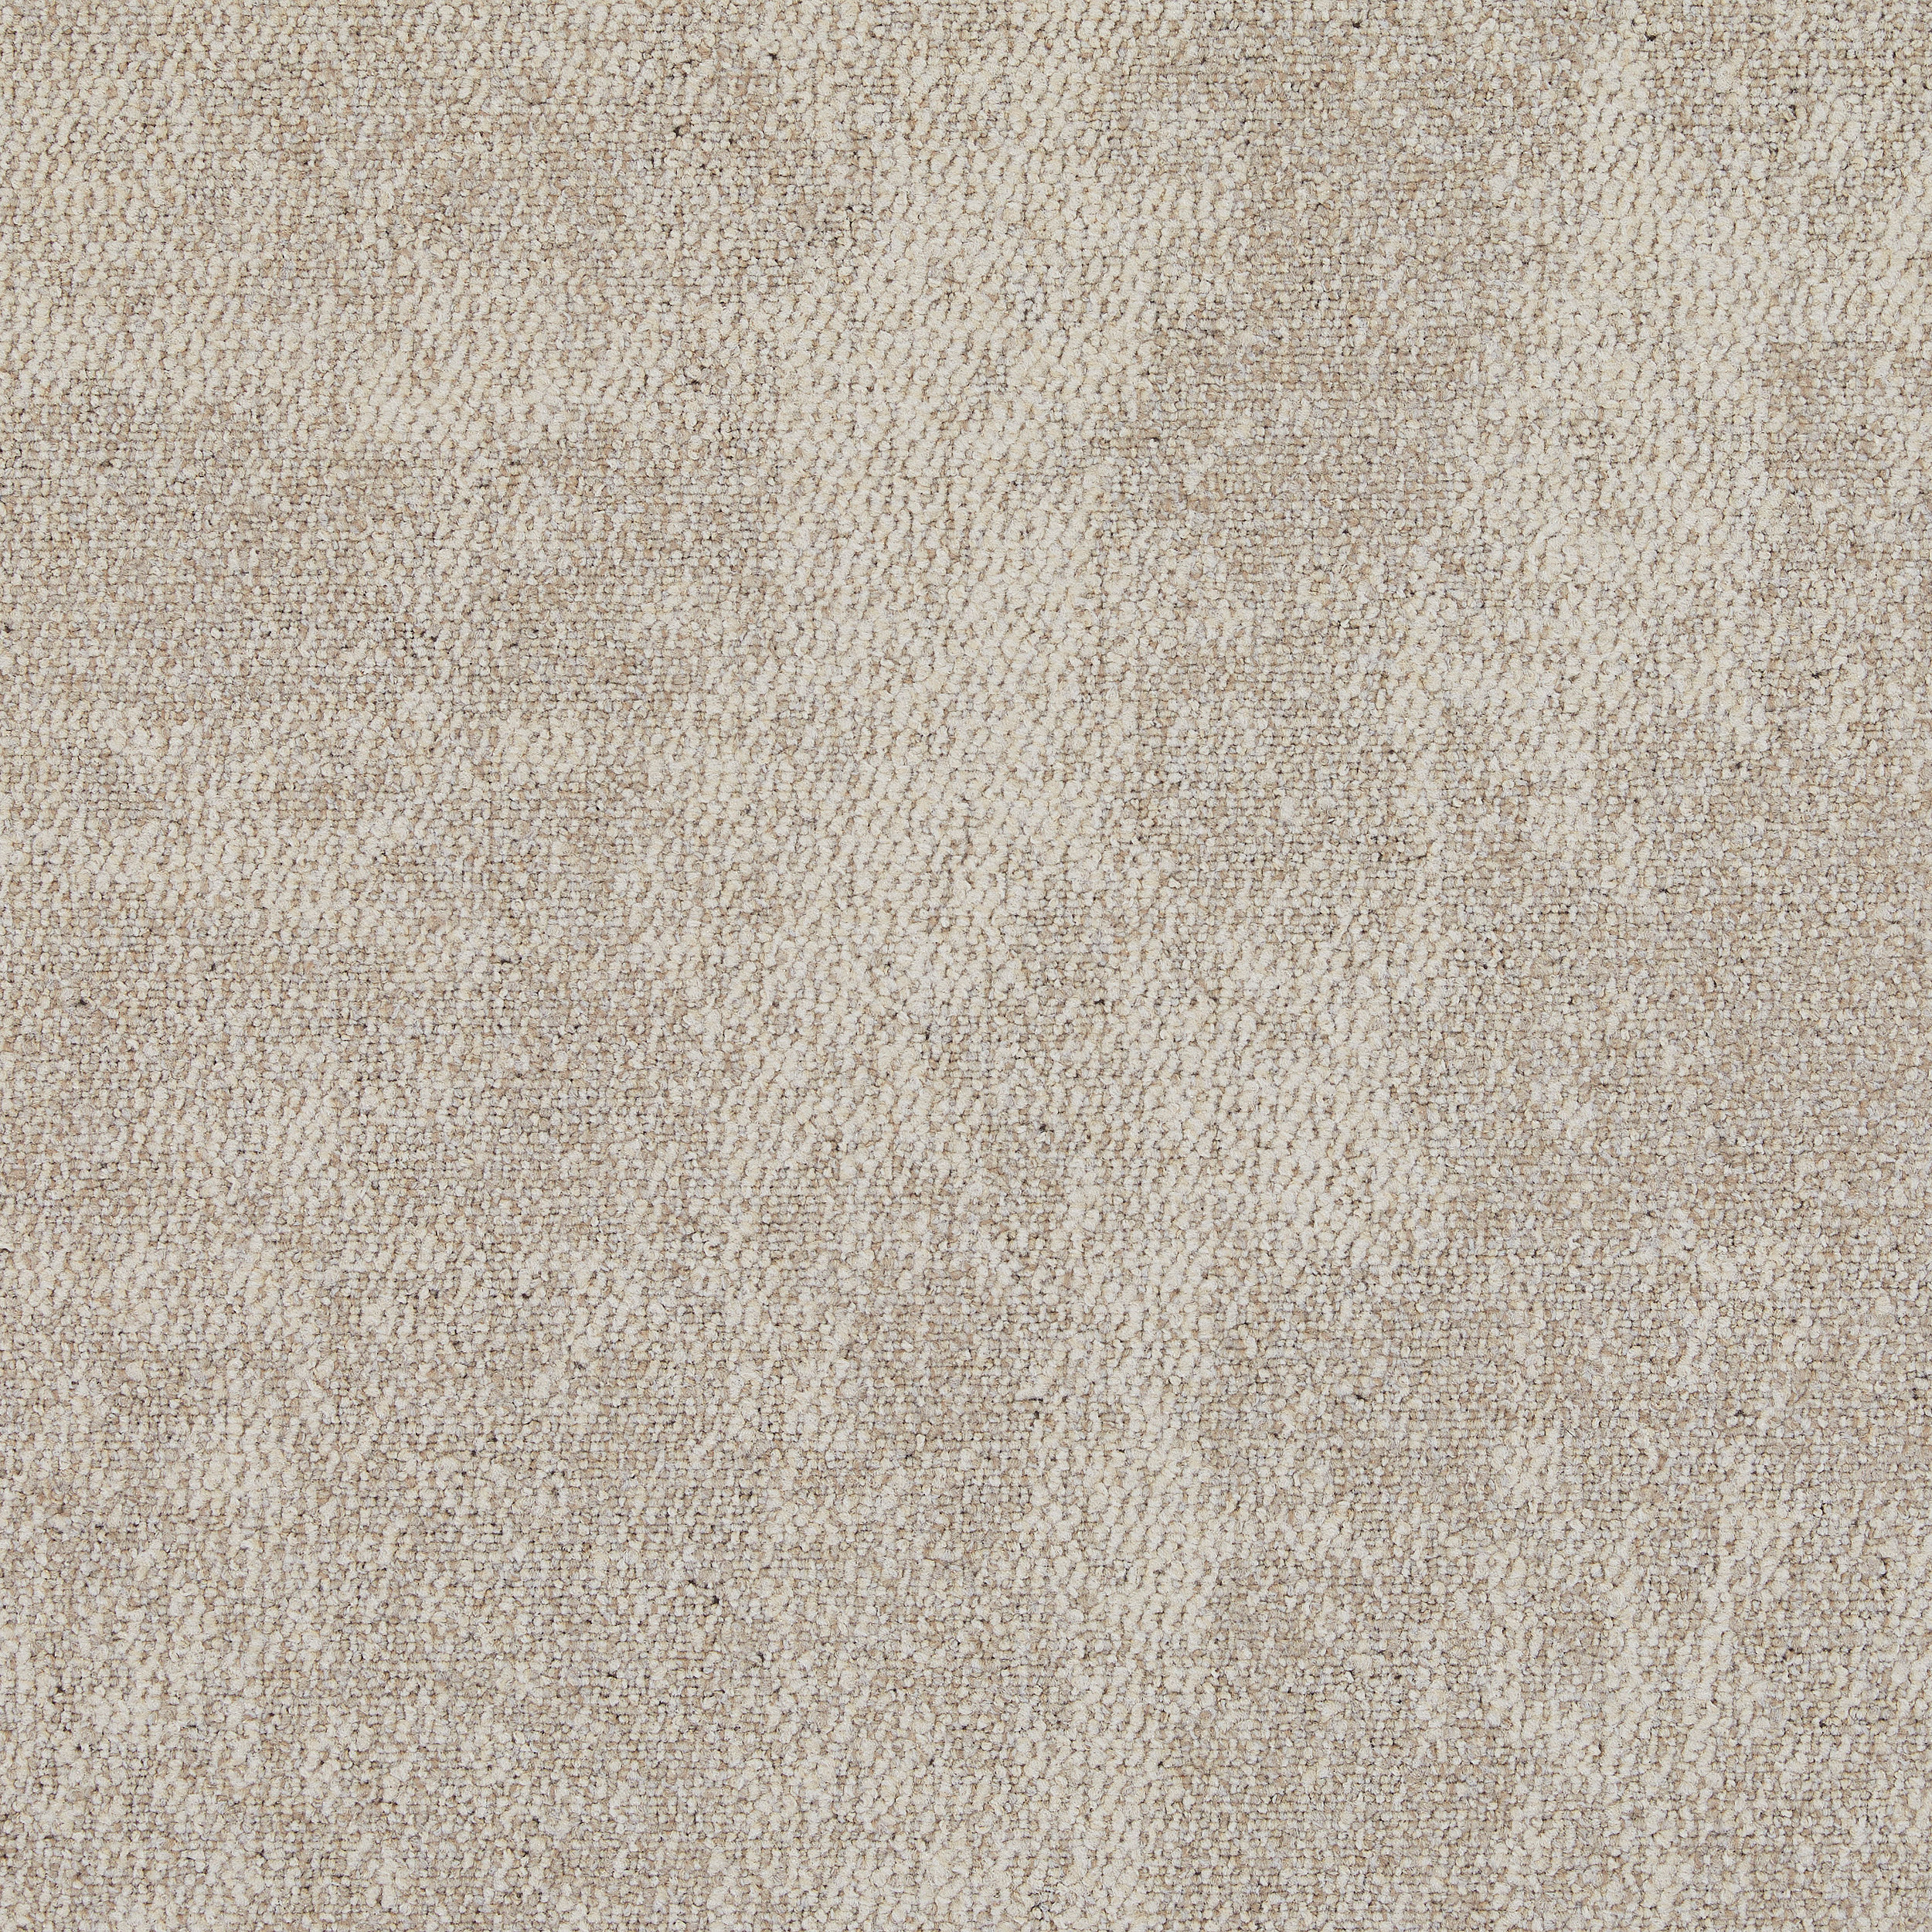 CE100 Carpet Tile in Consider número de imagen 14